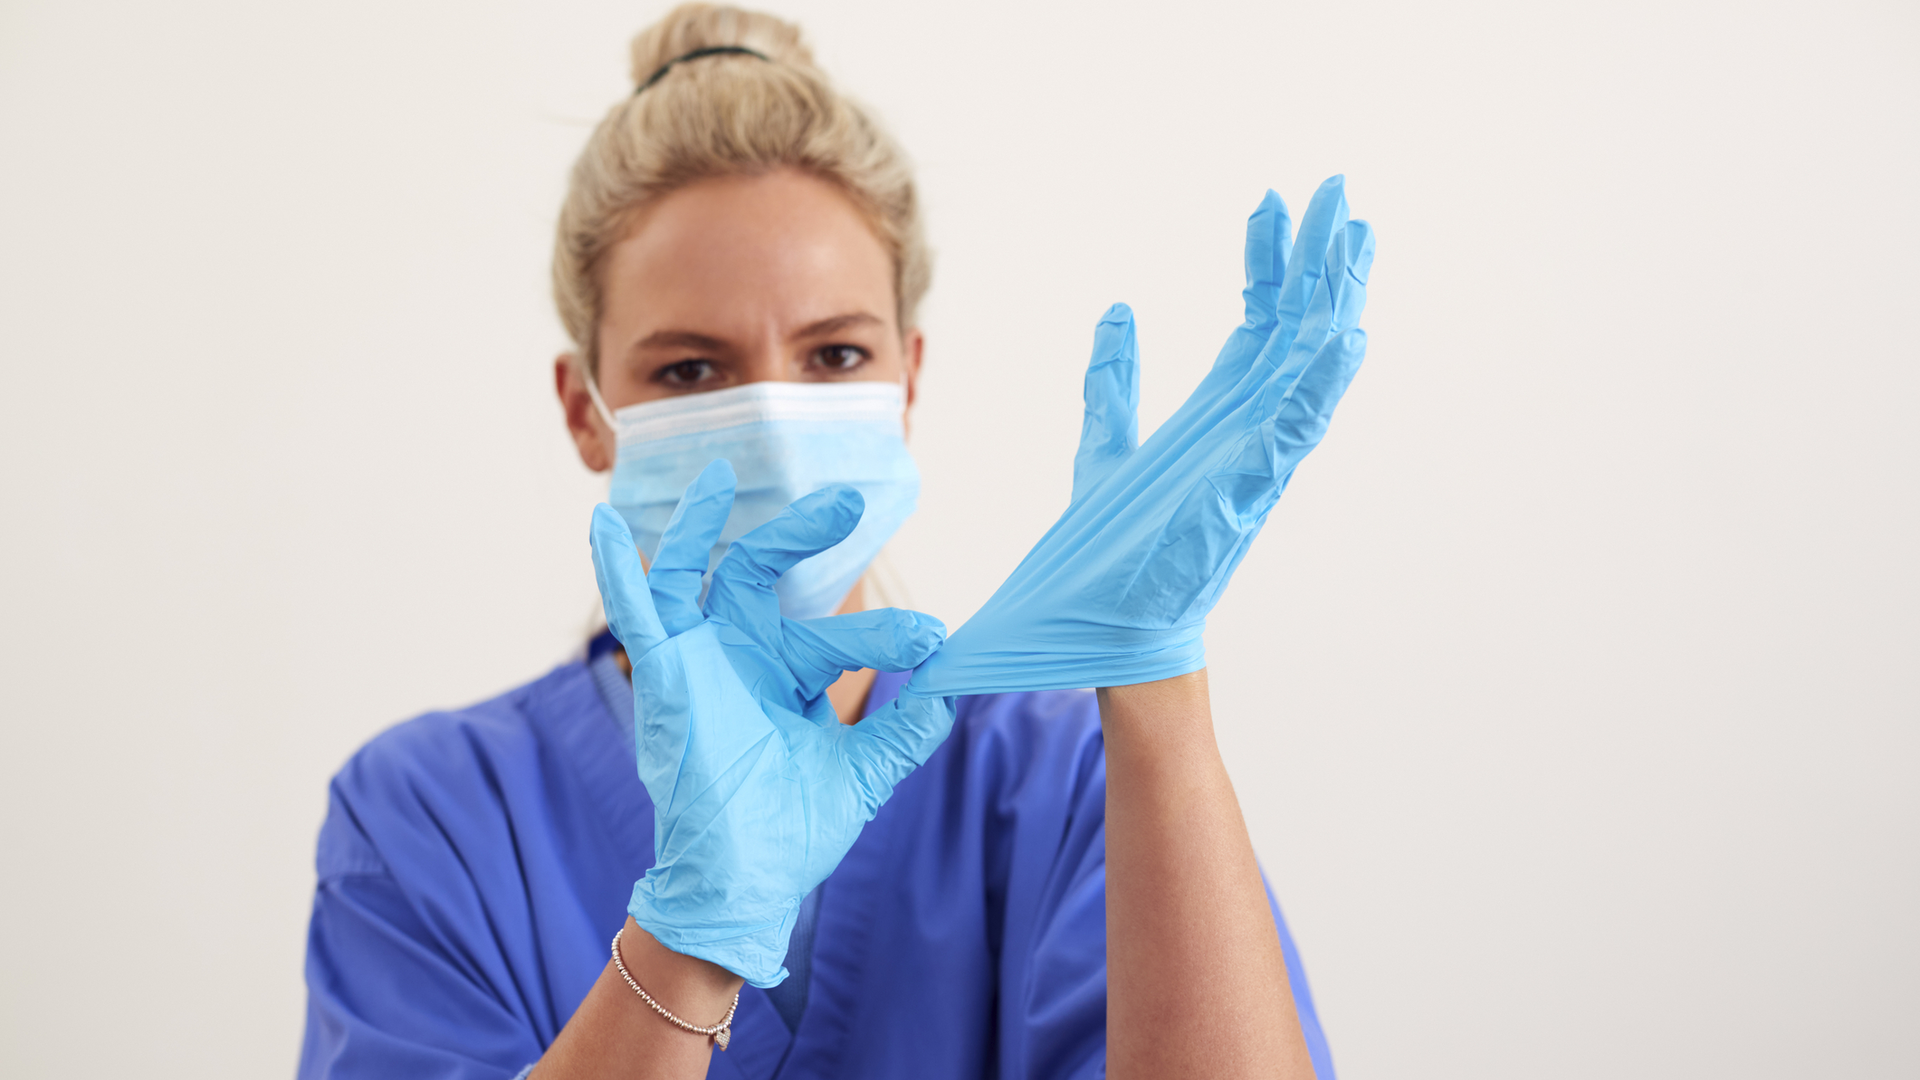 Надеть стерильные перчатки. Надевание нестерильных перчаток. PPE Gloves on people. Как одевать стерильные перчатки хирургу. Надевать стерильные перчатки в случаях